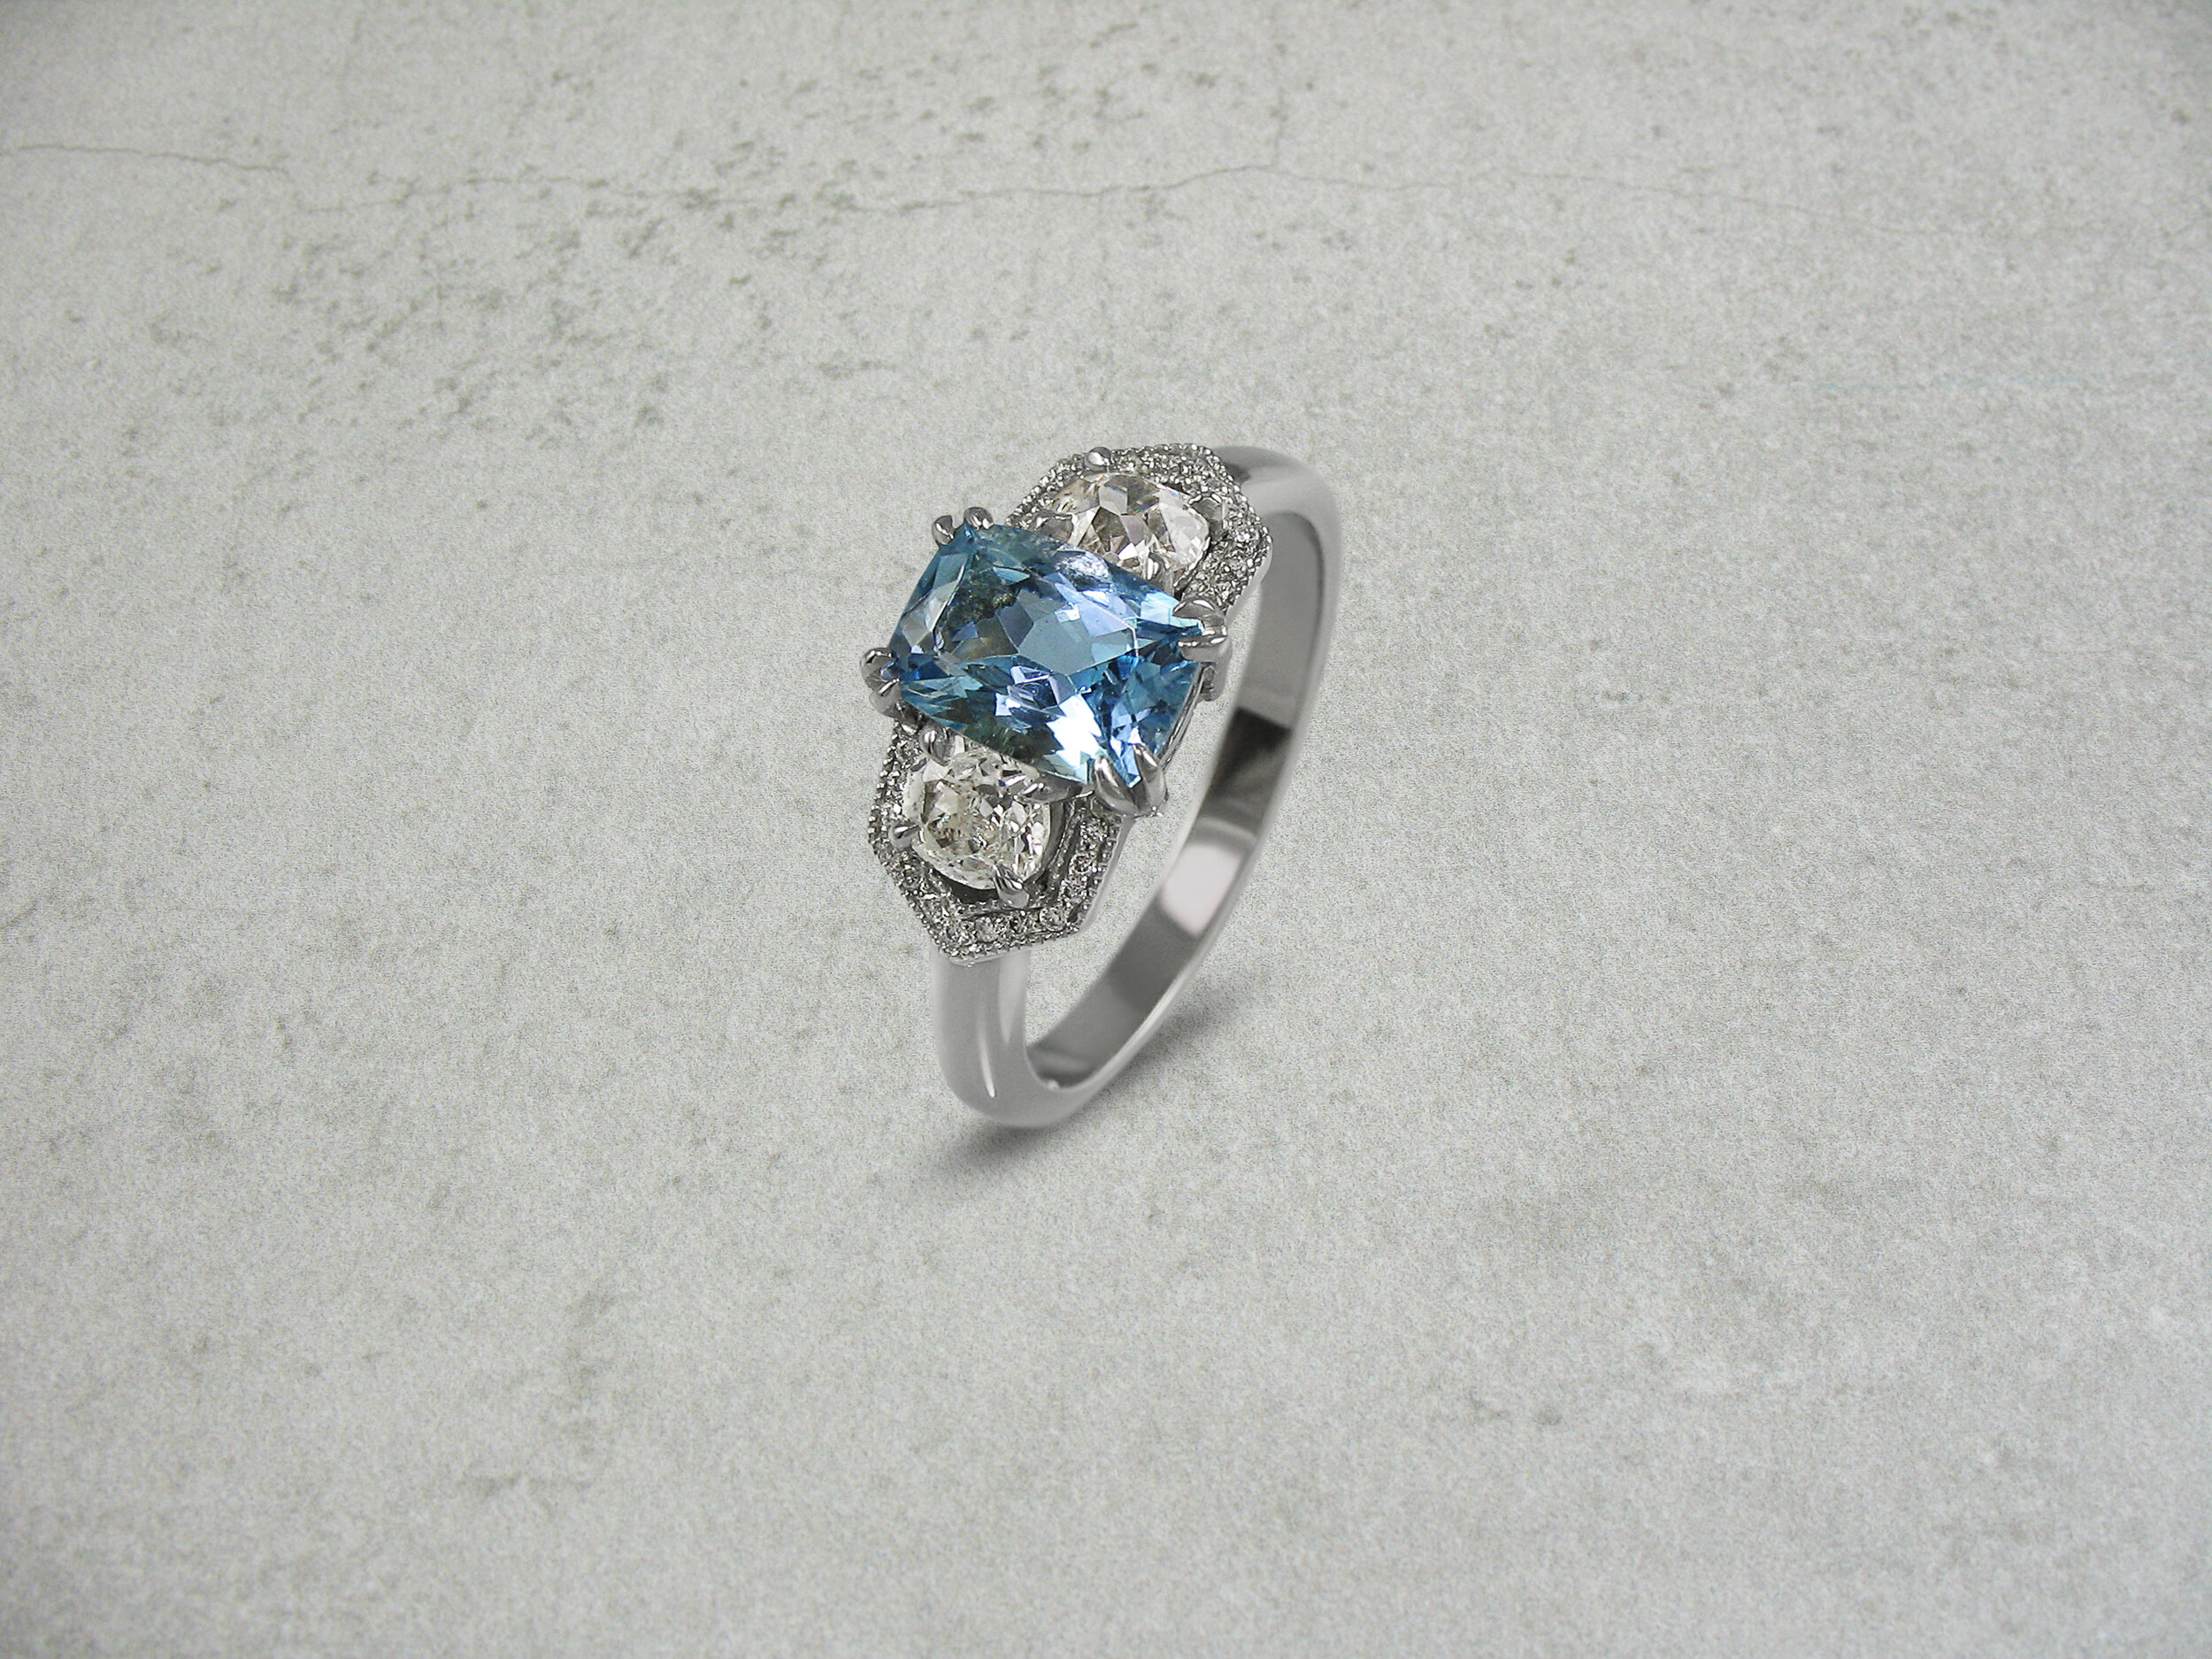 Vintage style aquamarine band diamond engagement ring